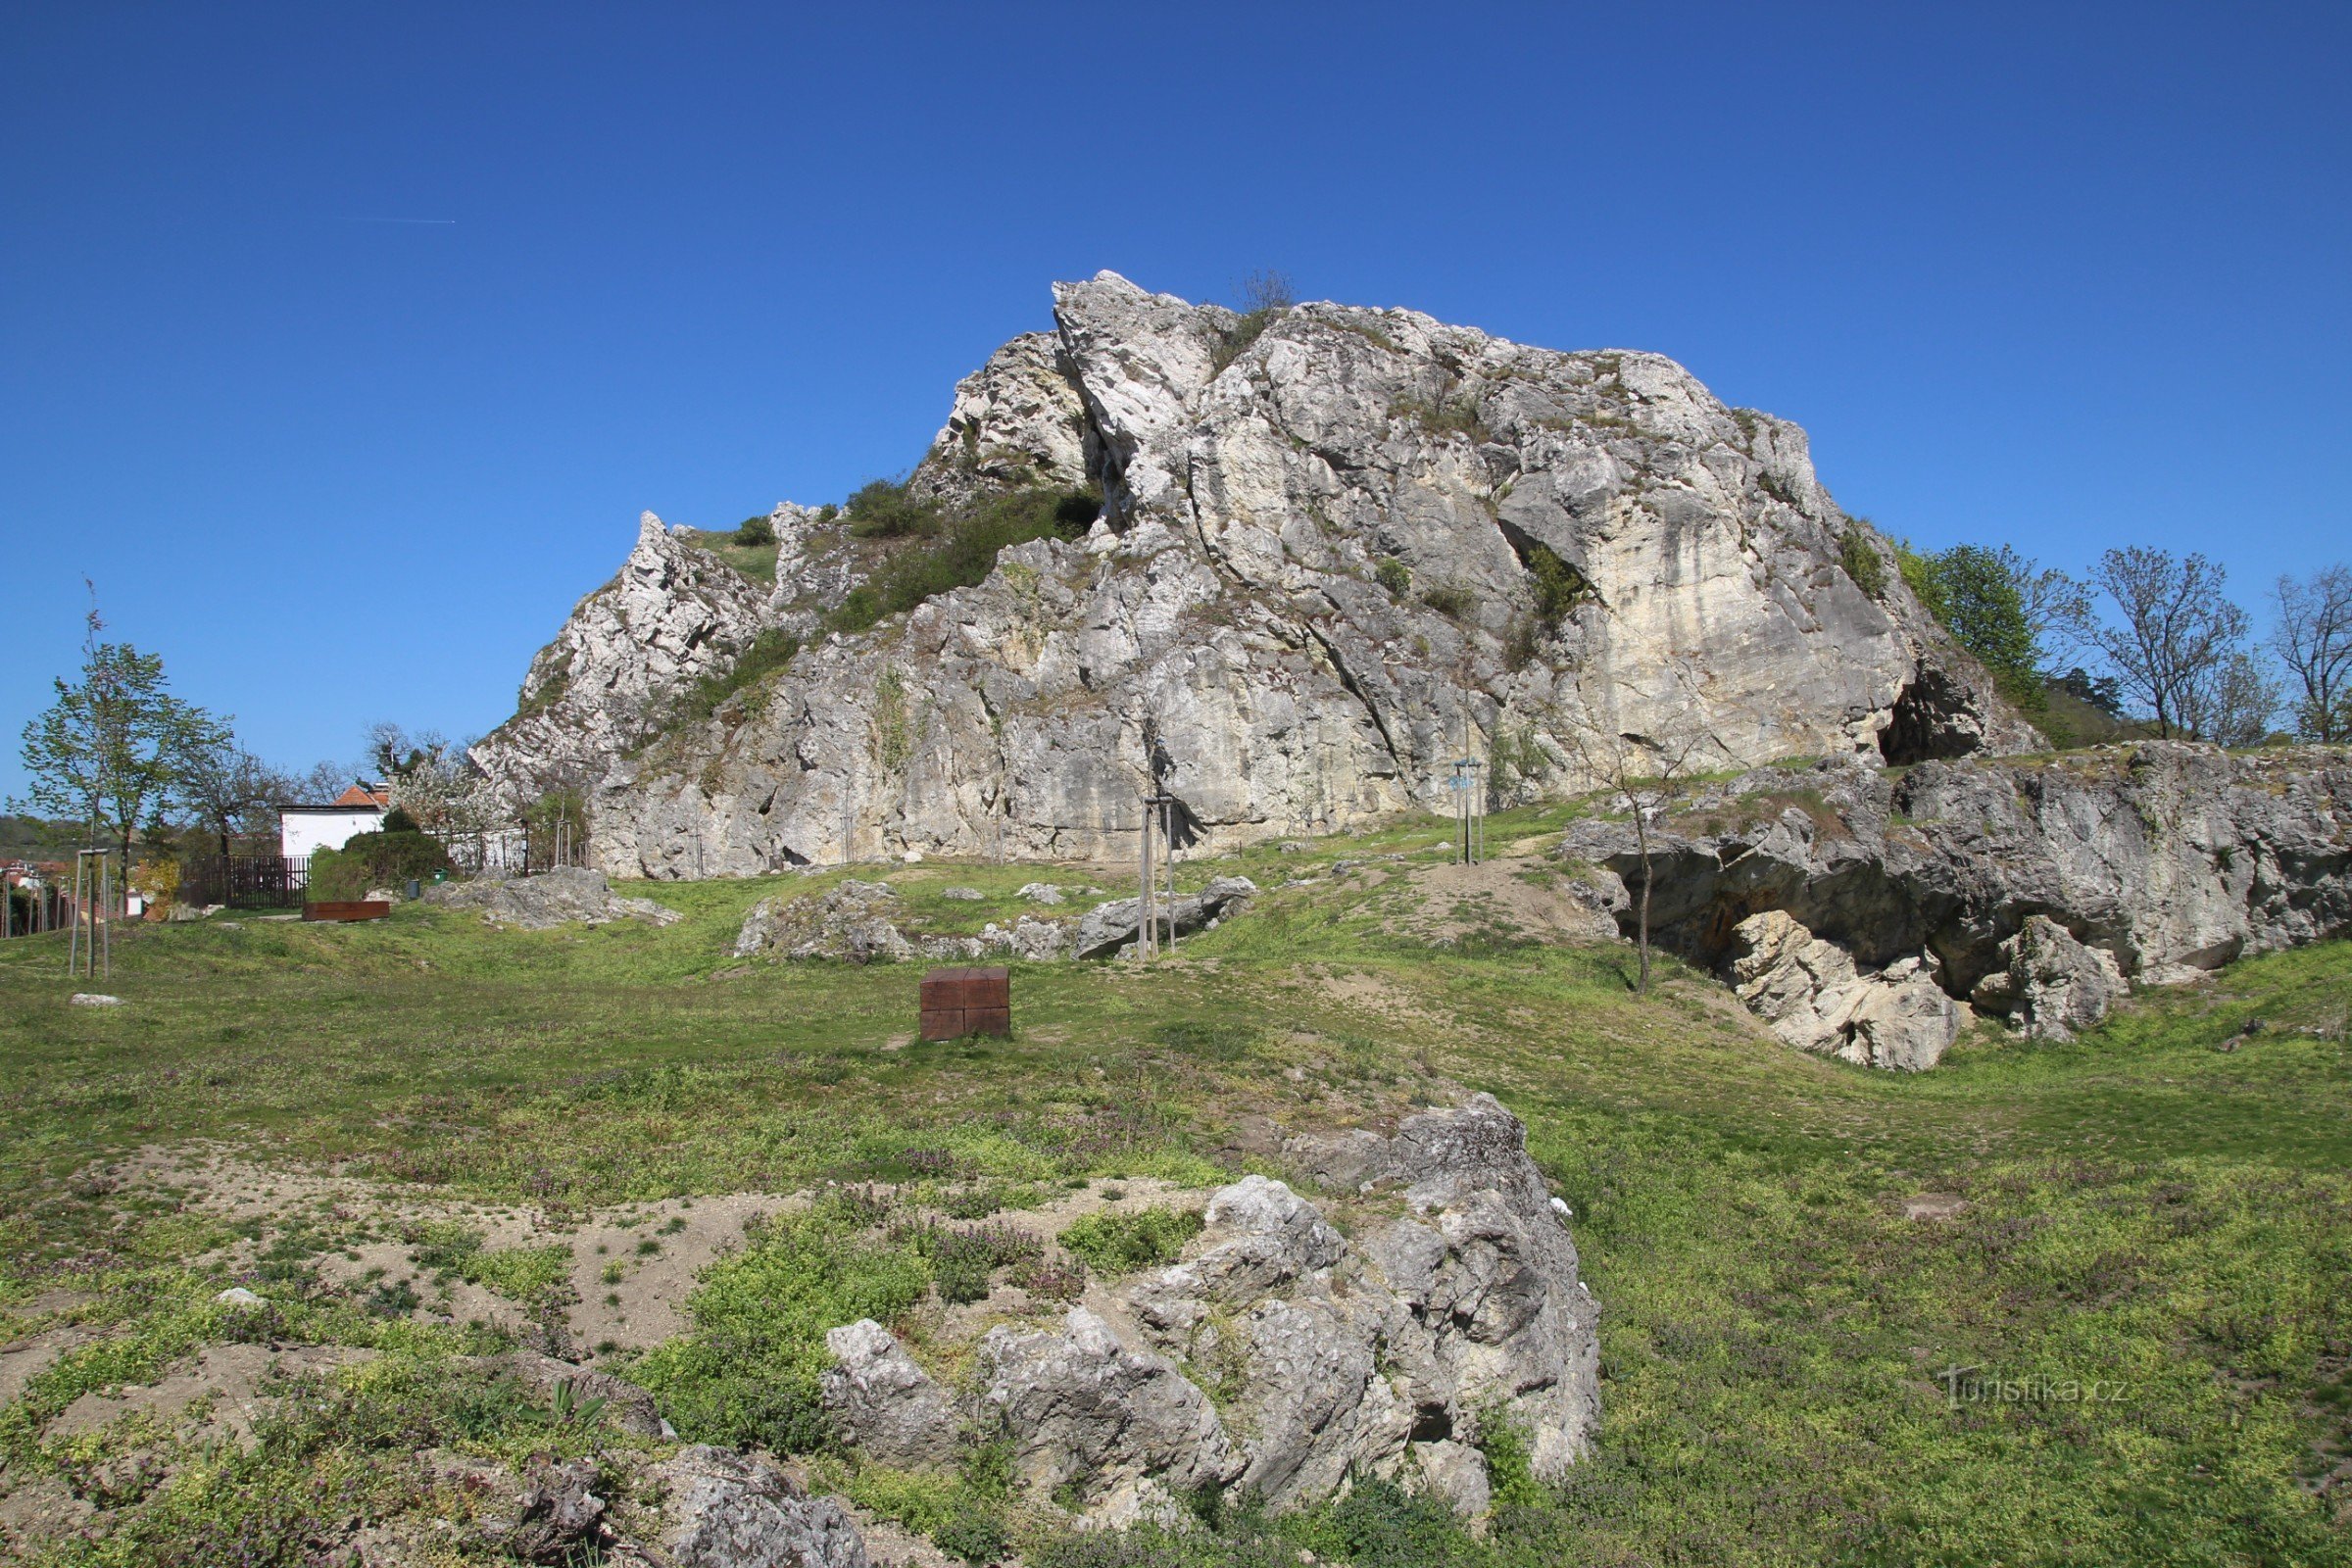 Ένα προσβάσιμο μικρό σπήλαιο είναι μέρος της περιοχής περιπάτου